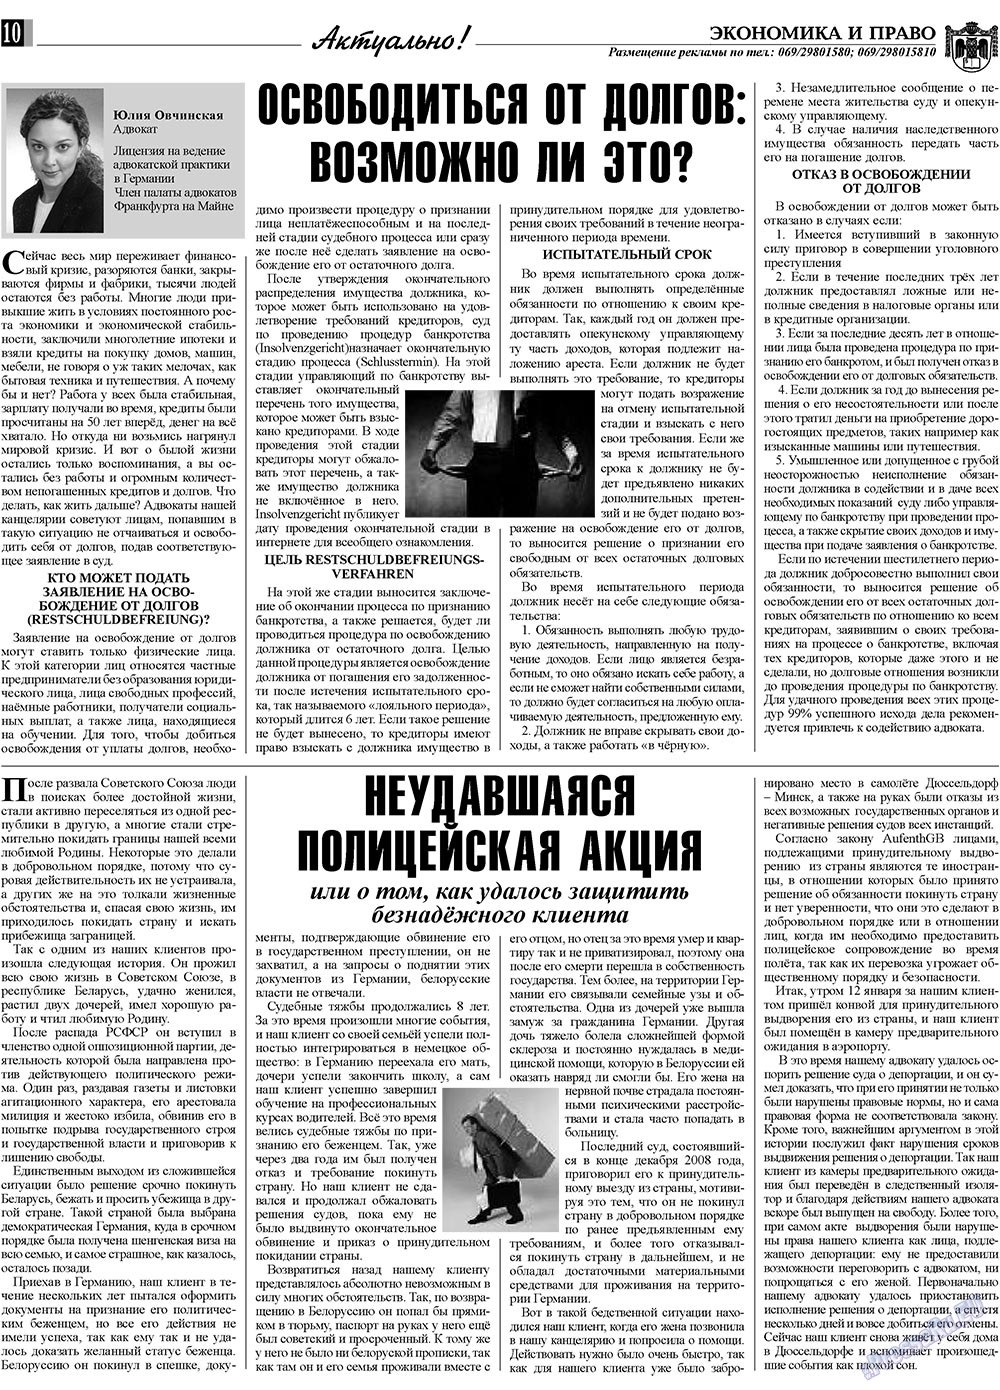 Экономика и право, газета. 2009 №4 стр.10